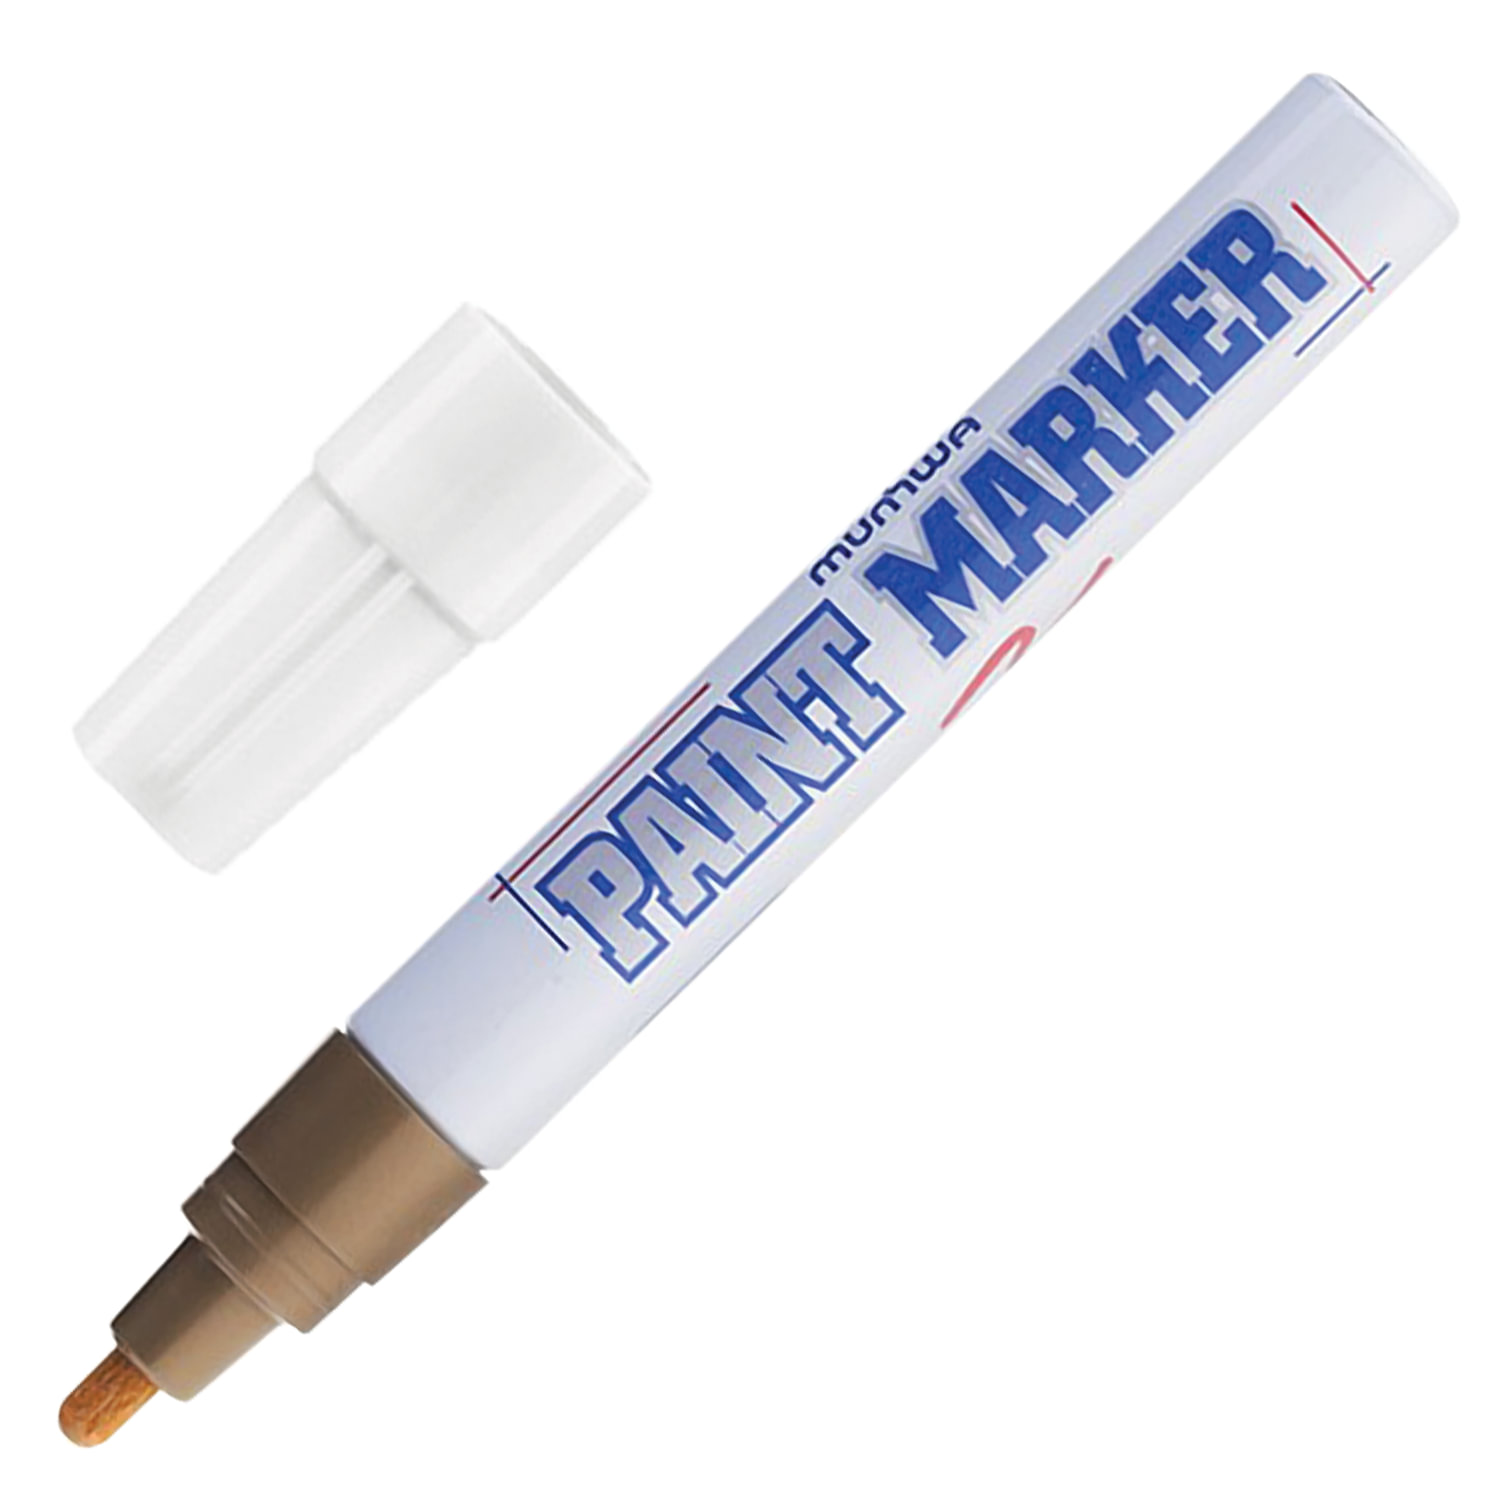 Маркер-краска лаковый (paint marker) MUNHWA, 4 мм, ЗОЛОТОЙ, нитро-основа, алюминиевый корпус, PM-07 купите по выгодной цене